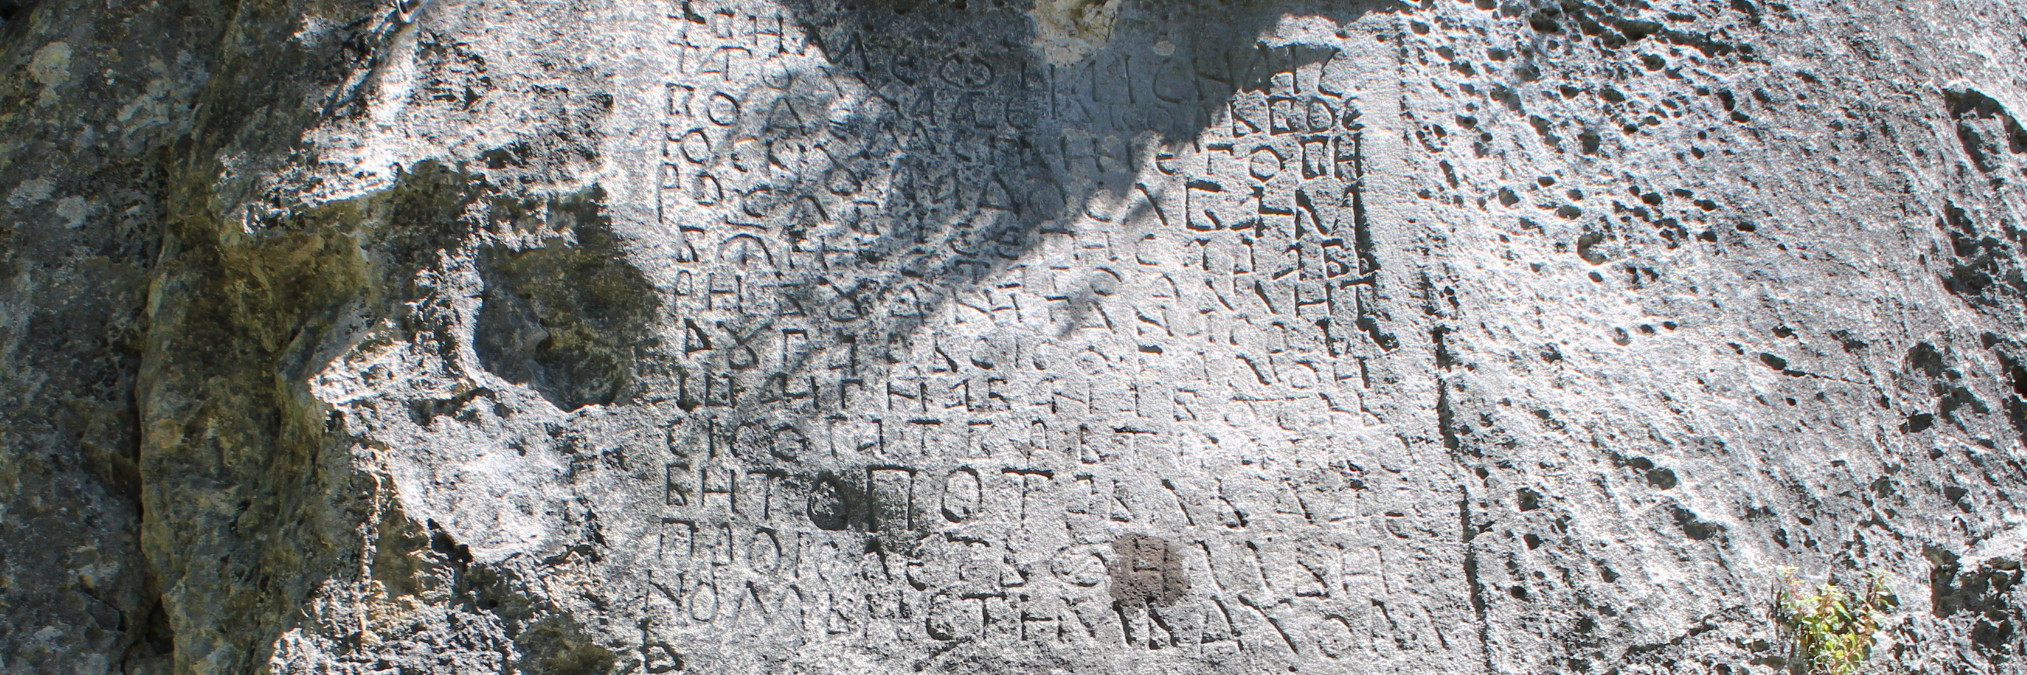 Средневековая надпись в Доней Дрежнице